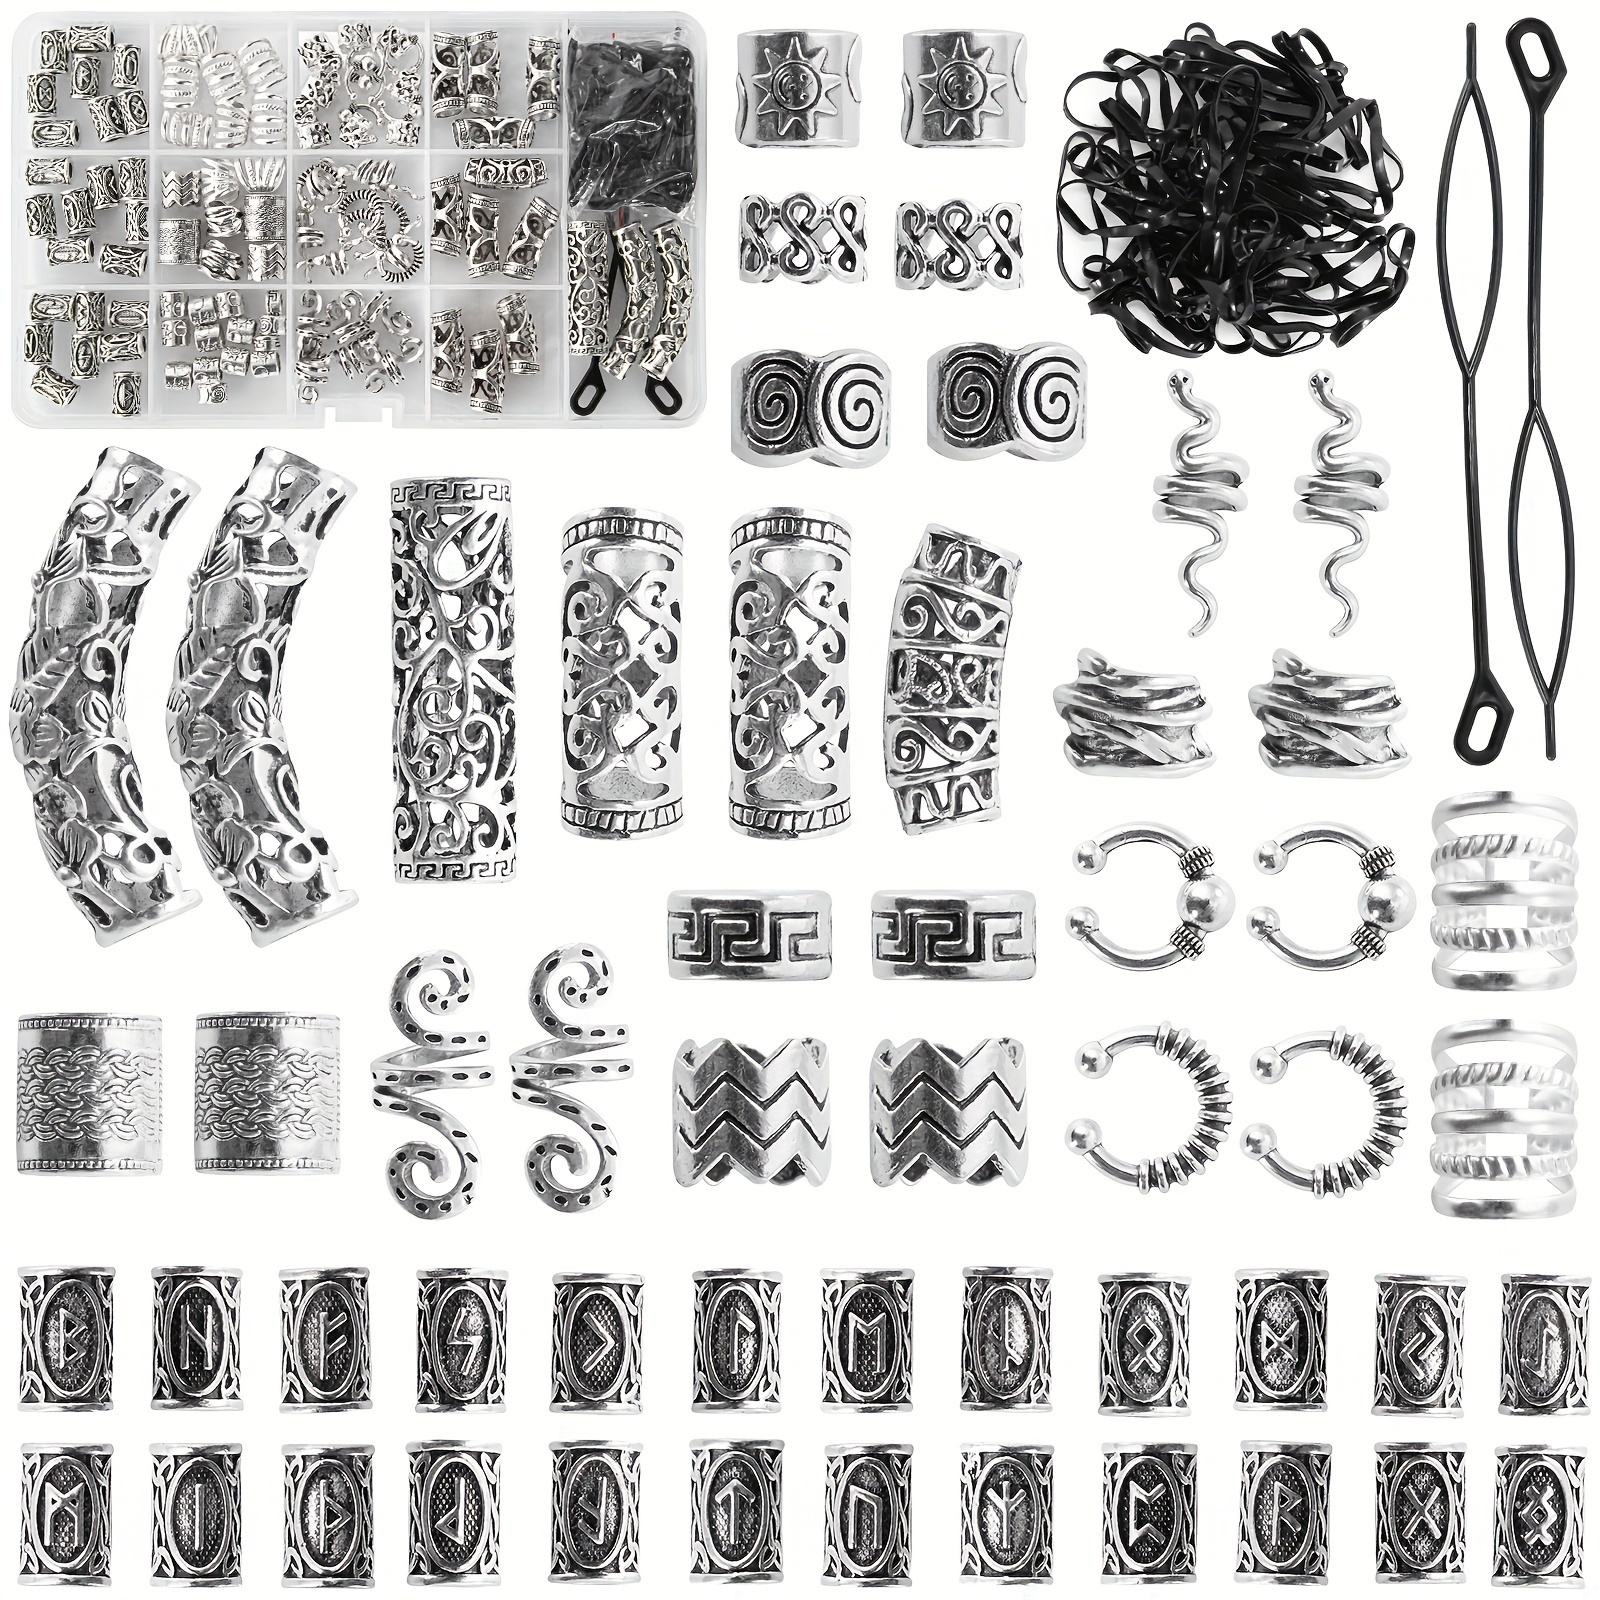 152 piezas de joyería de vikingos para el cabello, cuentas de tubo de runas  nórdicas, anillos de puños de metal, accesorios para el cabello para – Yaxa  Colombia